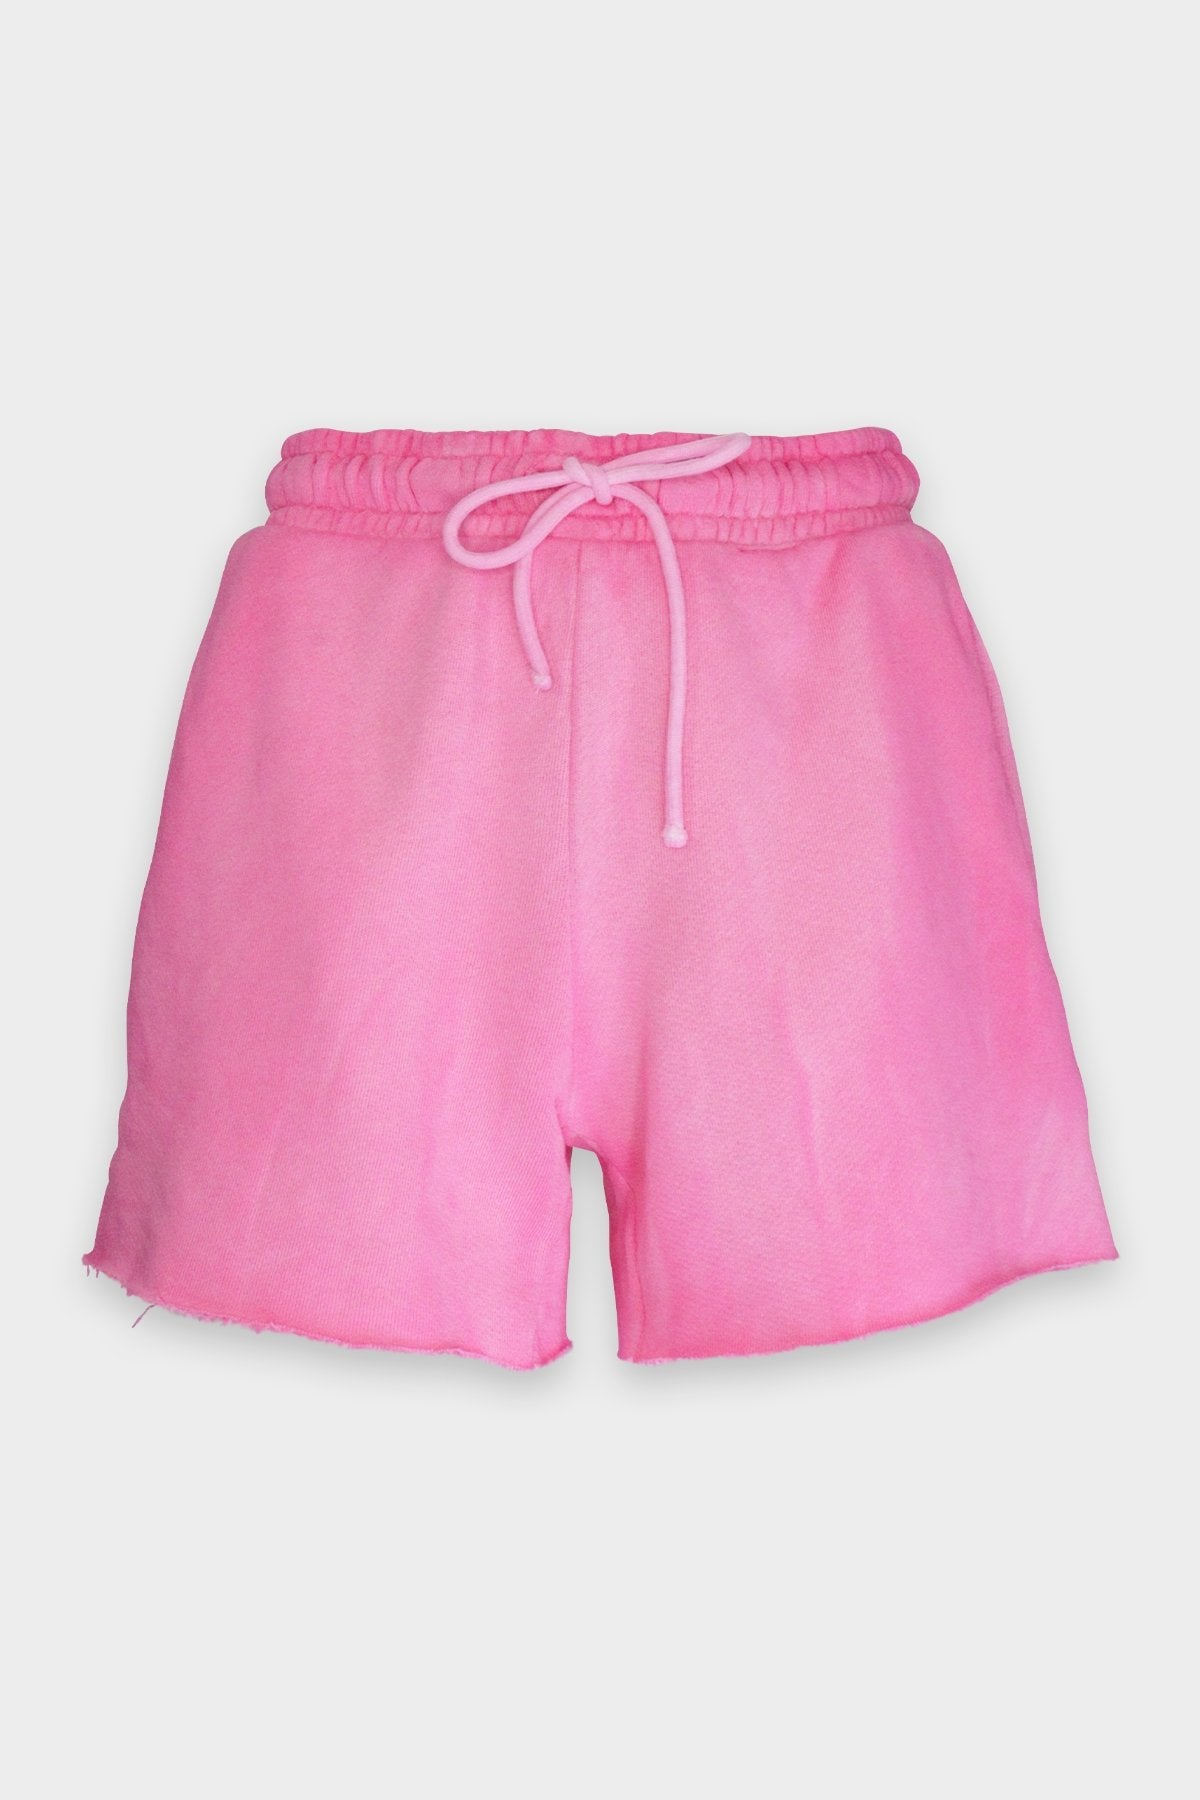 Brooklyn Shorts in Hot Pink - shop-olivia.com